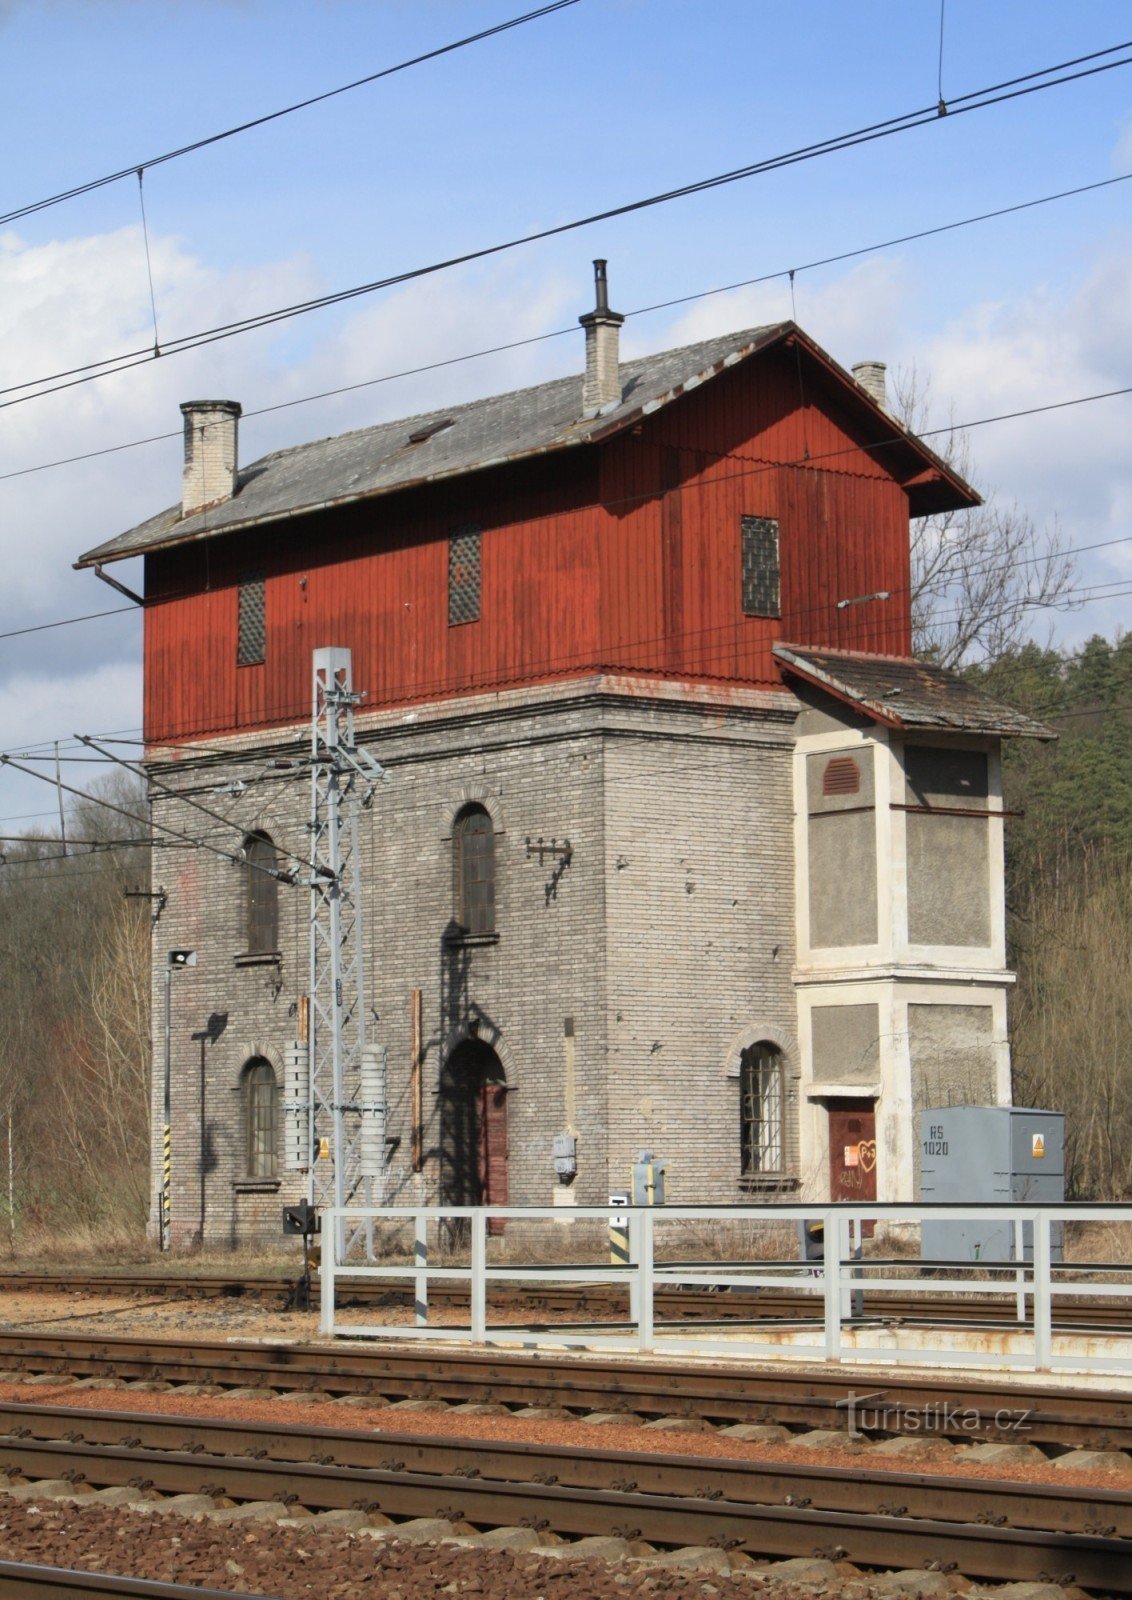 Skalice nad Svitavou - колишній станційний водогін